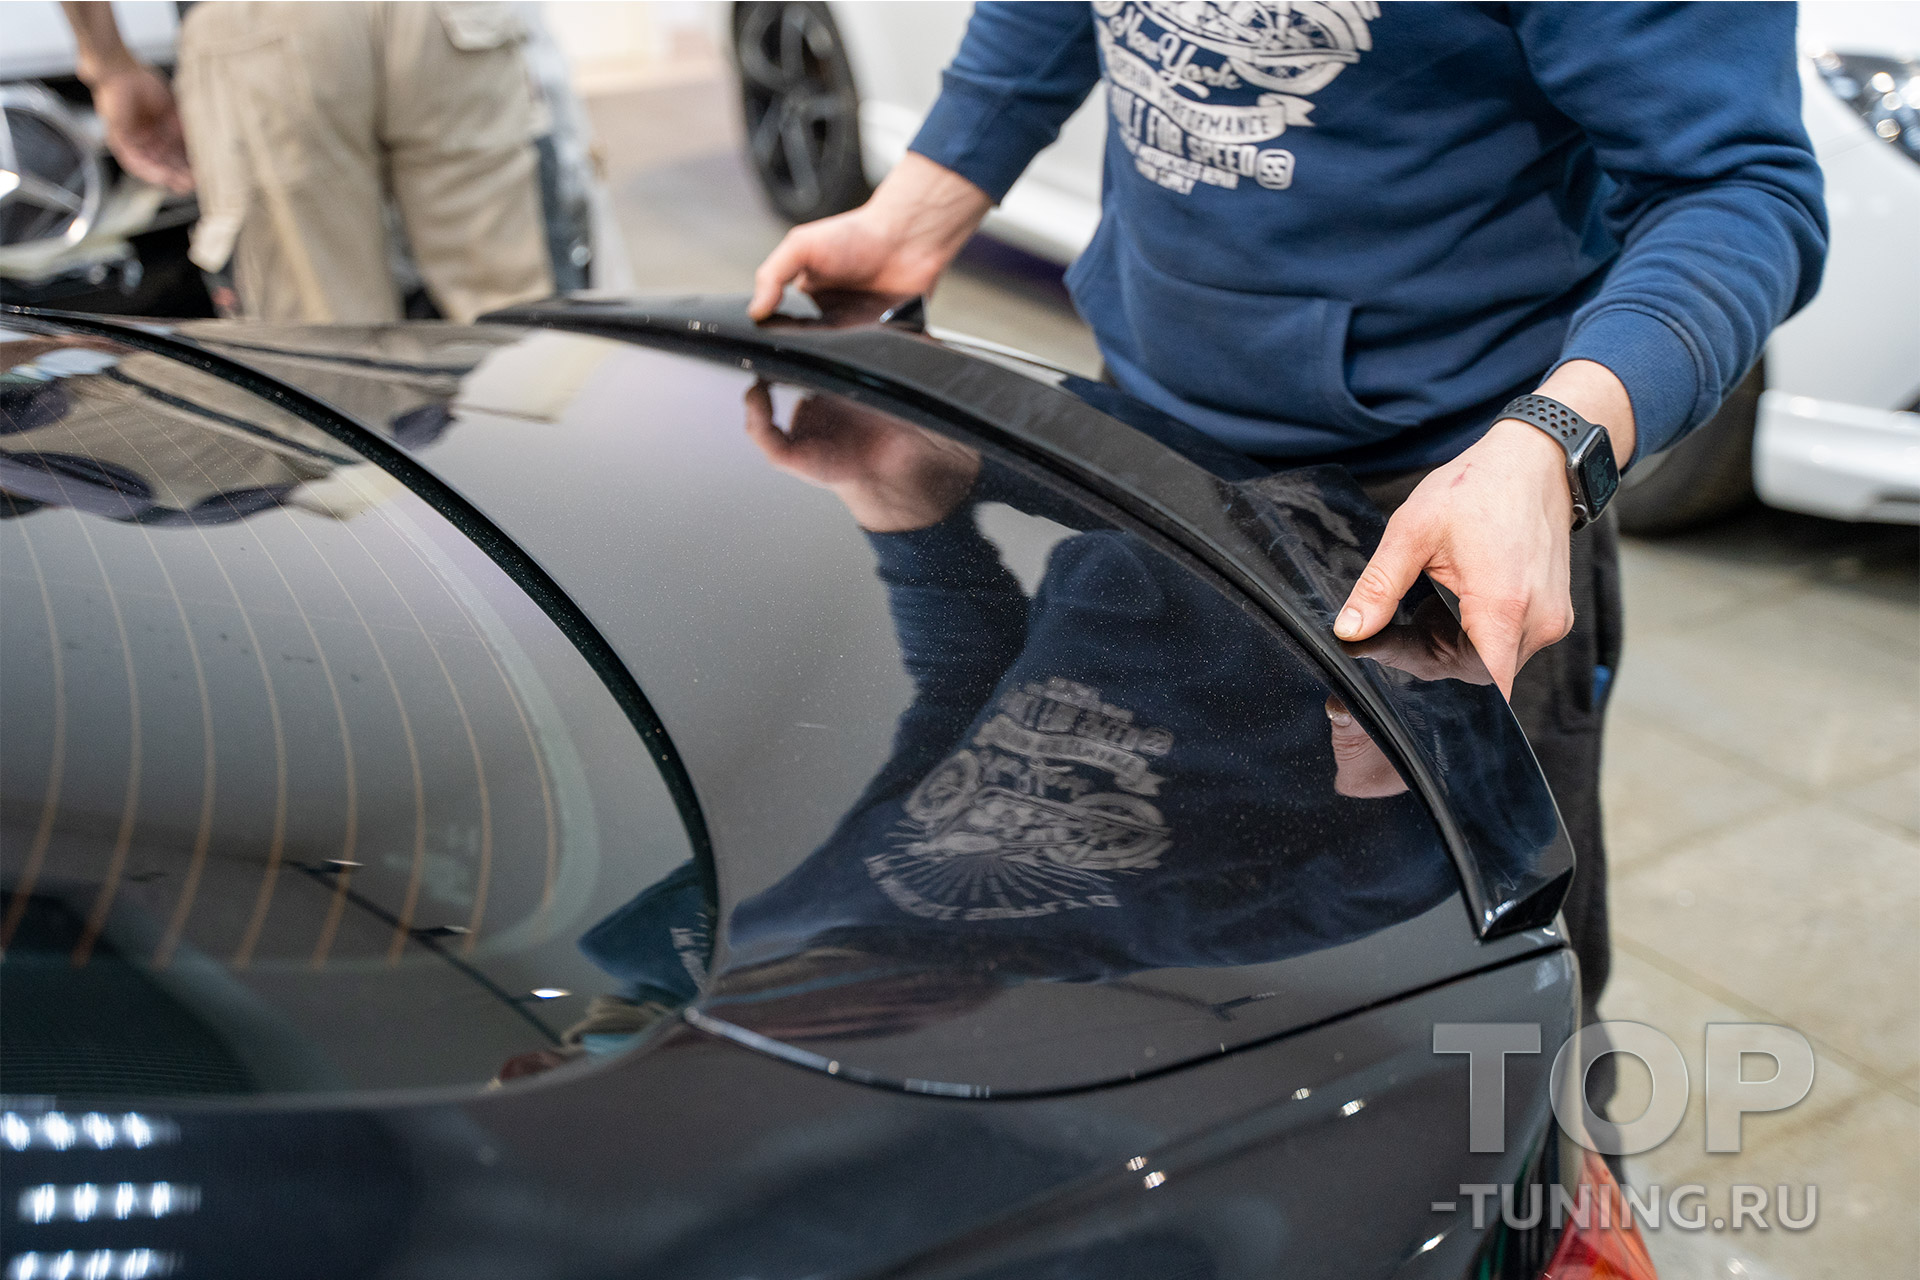 Лип спойлер на багажник БМВ 4 серии Ф32 – Установка под ключ в Топ Тюнинг Москва